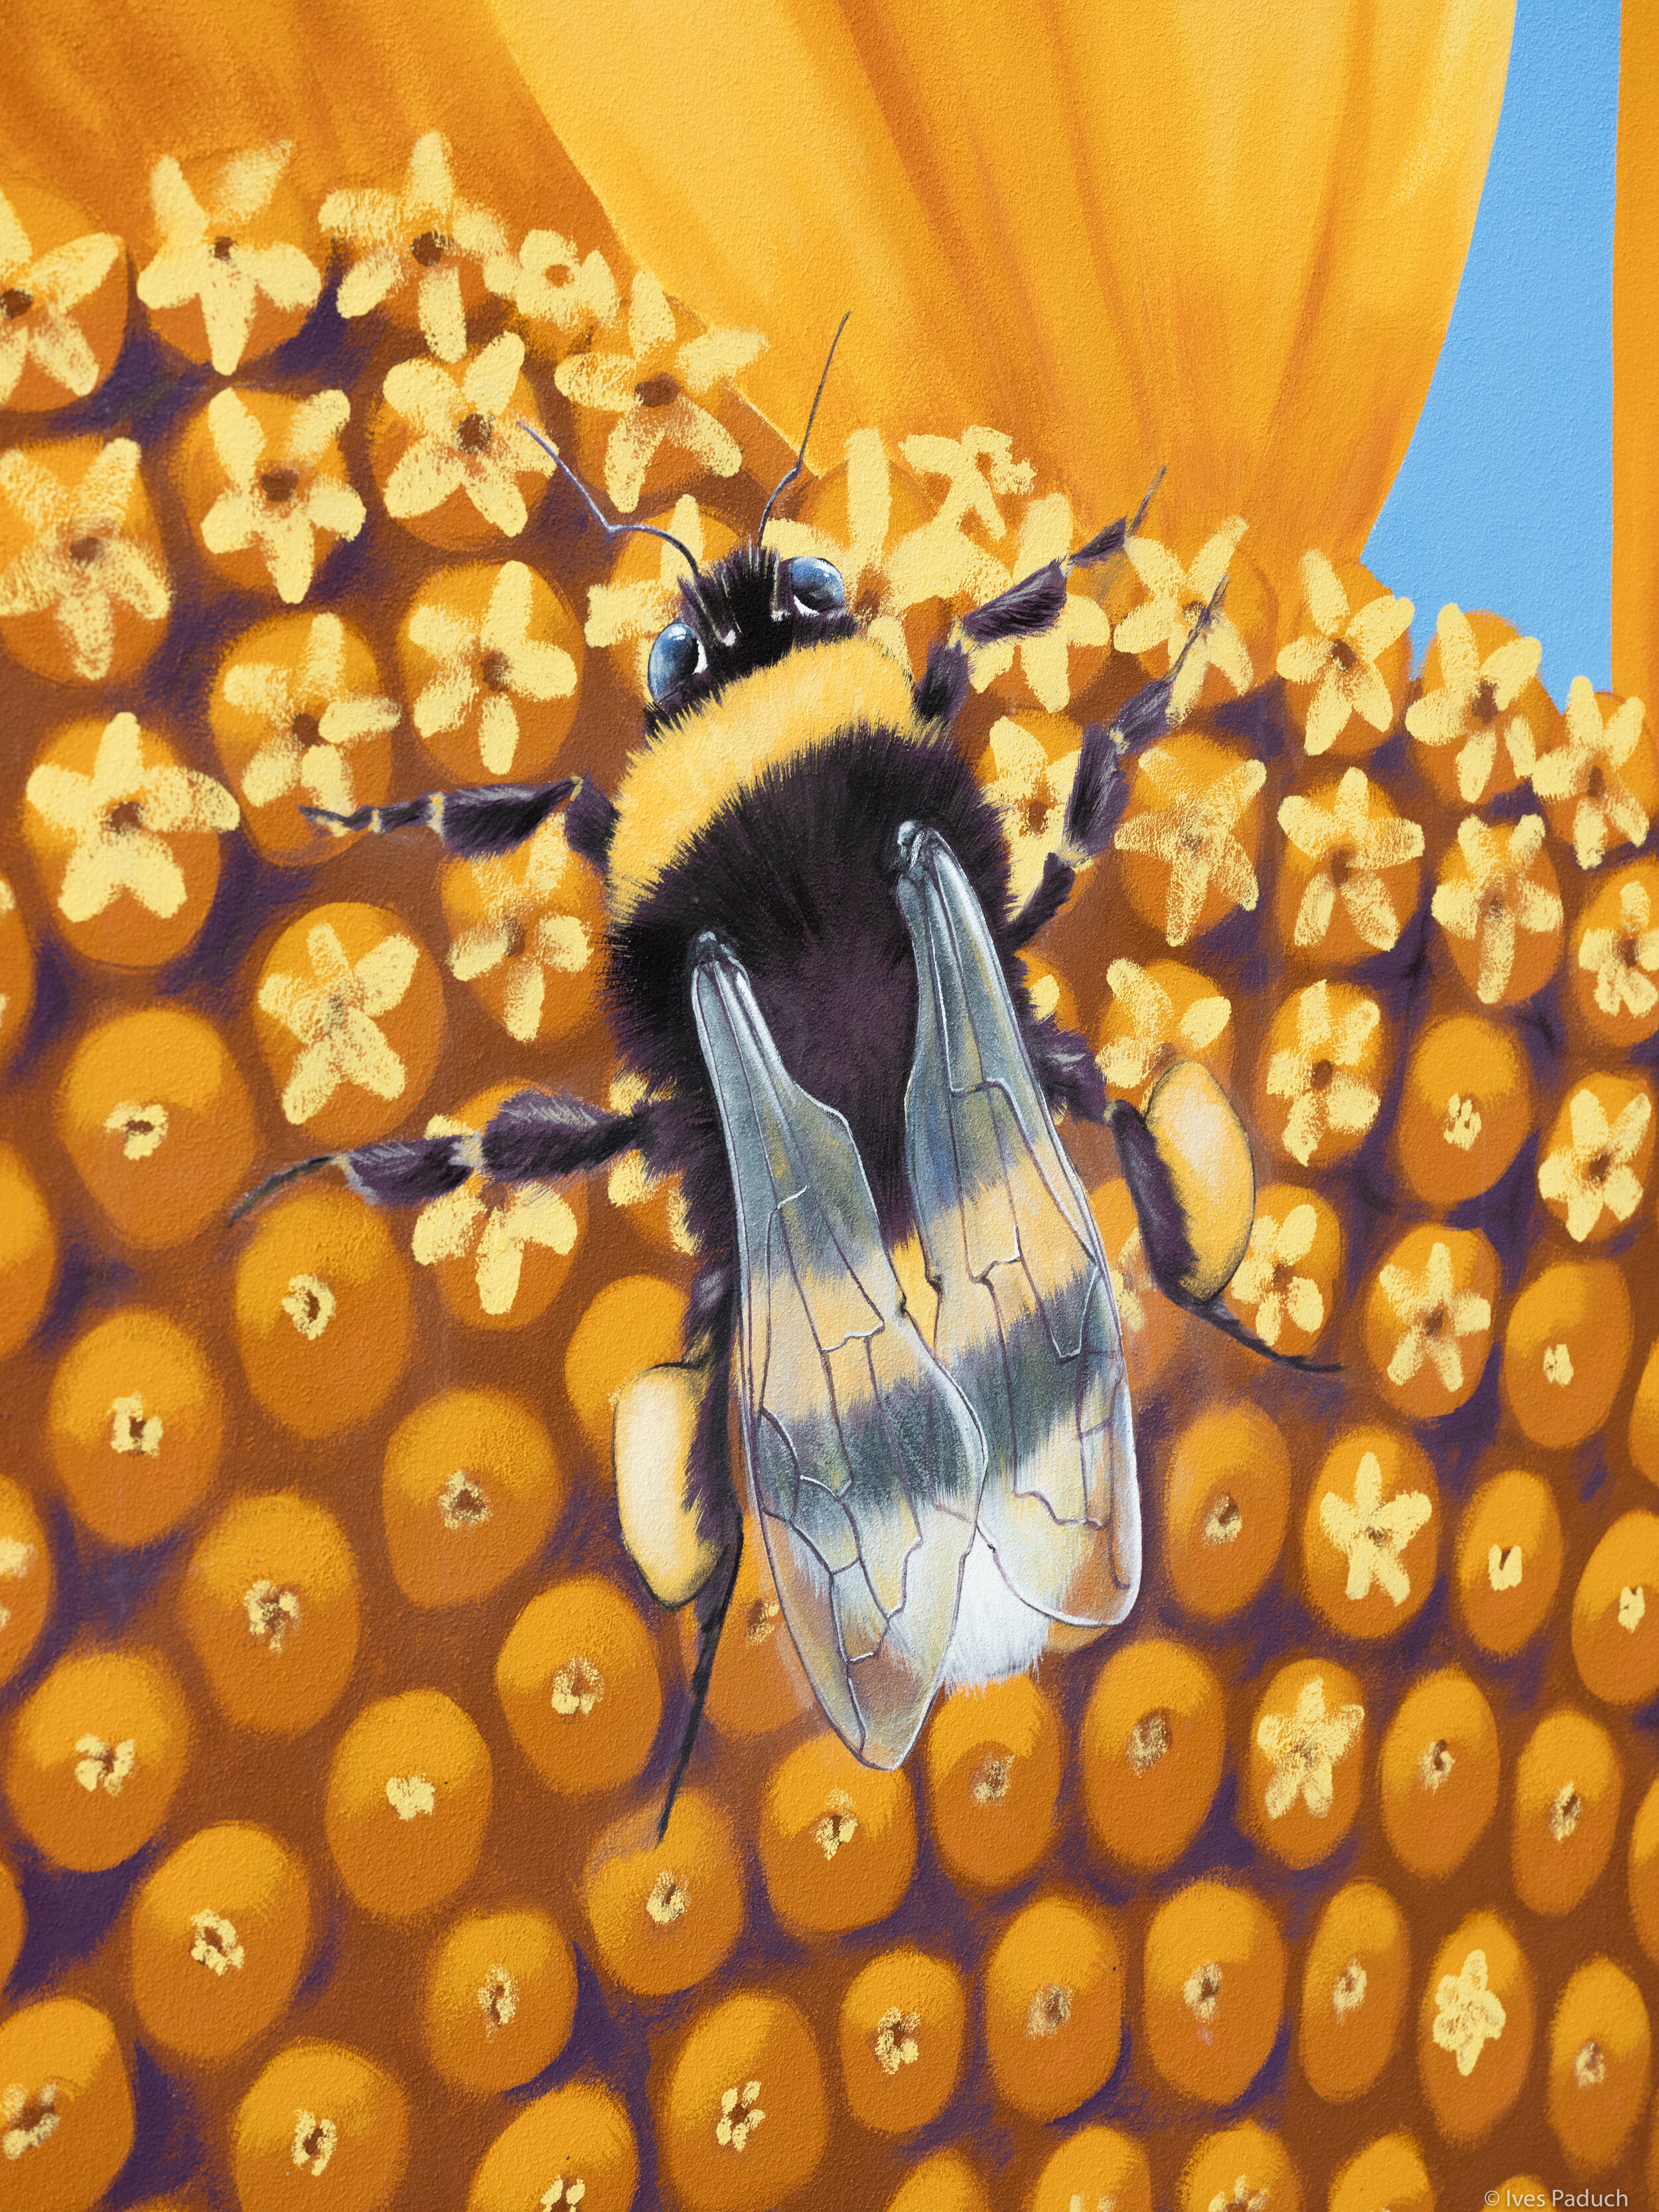 Der Künstler arbeitete mit seinem Team sehr detailliert: Neben den äußeren Blättern der Sonnenblume hat gleichzeitig jedes Korn noch eine einzelne kleine Blüte innen, auch die transparenten Hummelflügel sind deutlich erkennbar. © Ives Paduch Fotogra…